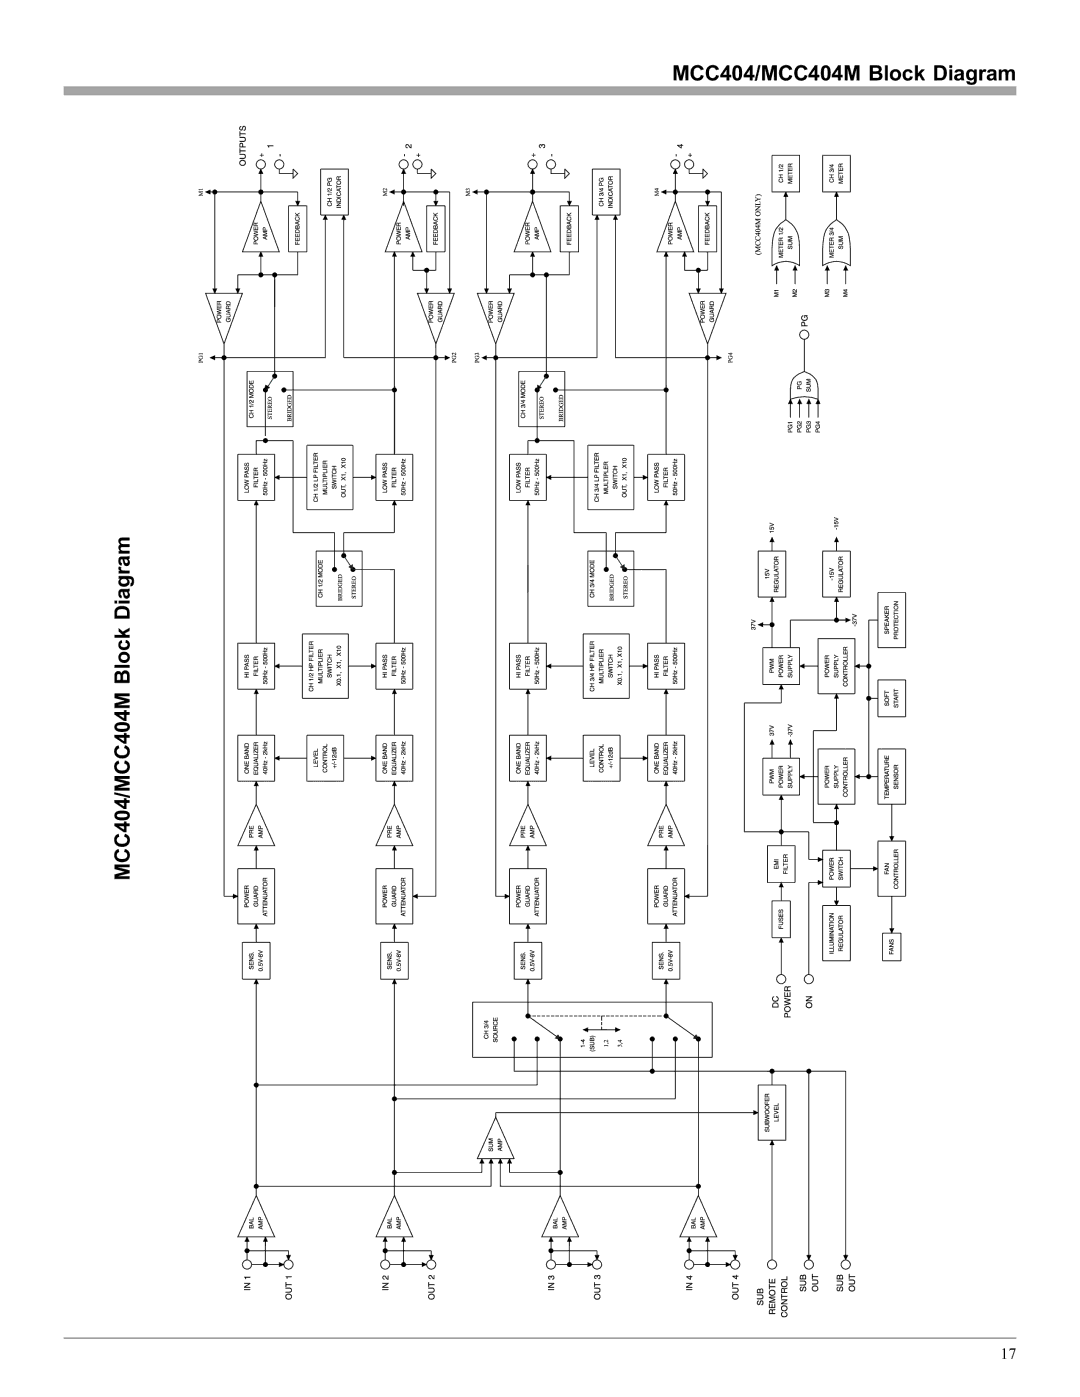 McIntosh manual MCC404/MCC404M Block Diagram 